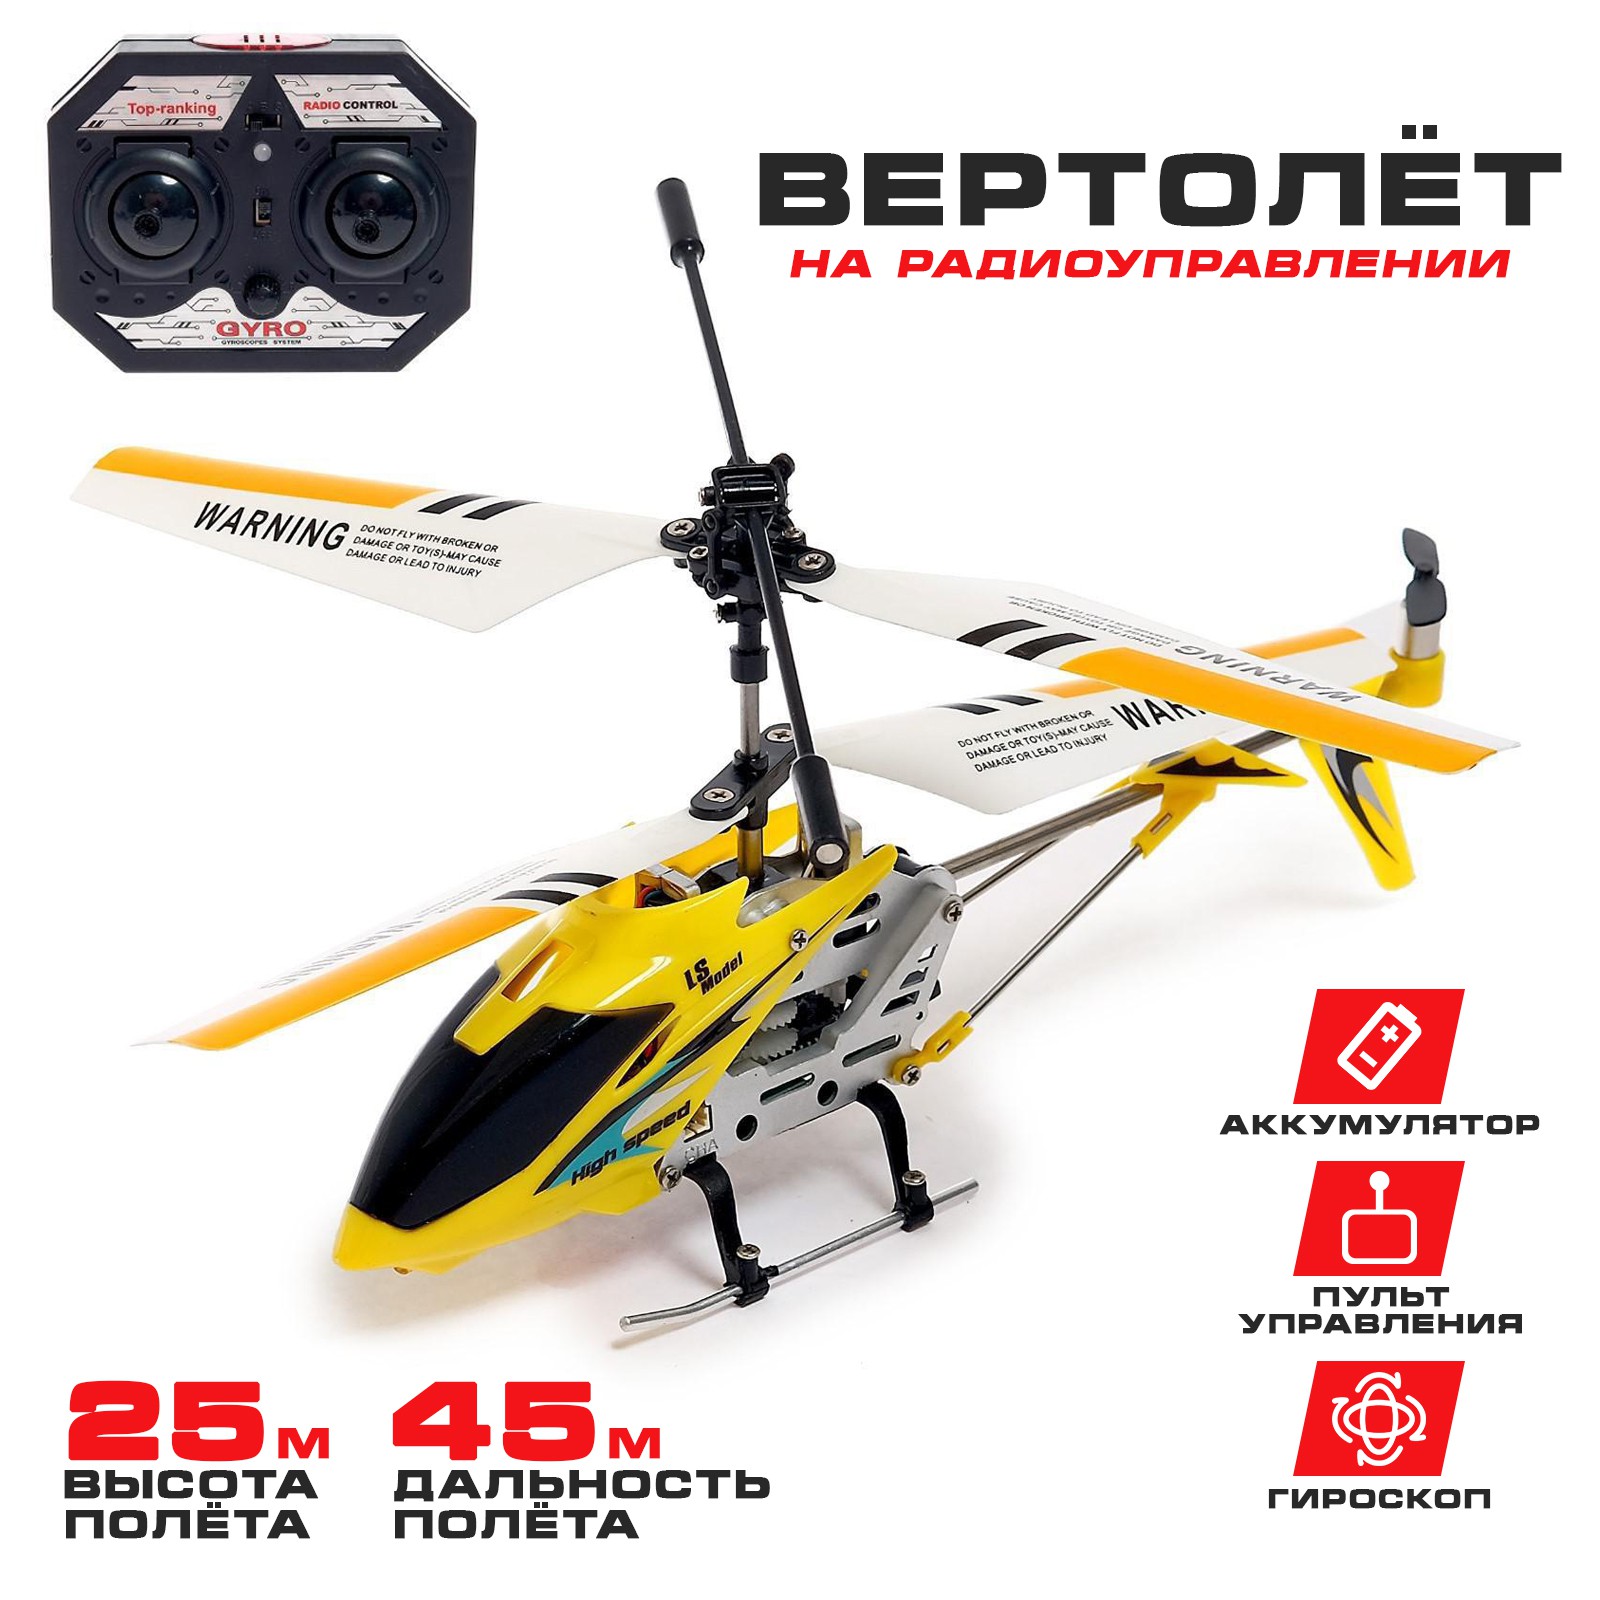 Вертолёт Автоград радиоуправляемый SKY с гироскопом цвет жёлтый - фото 1